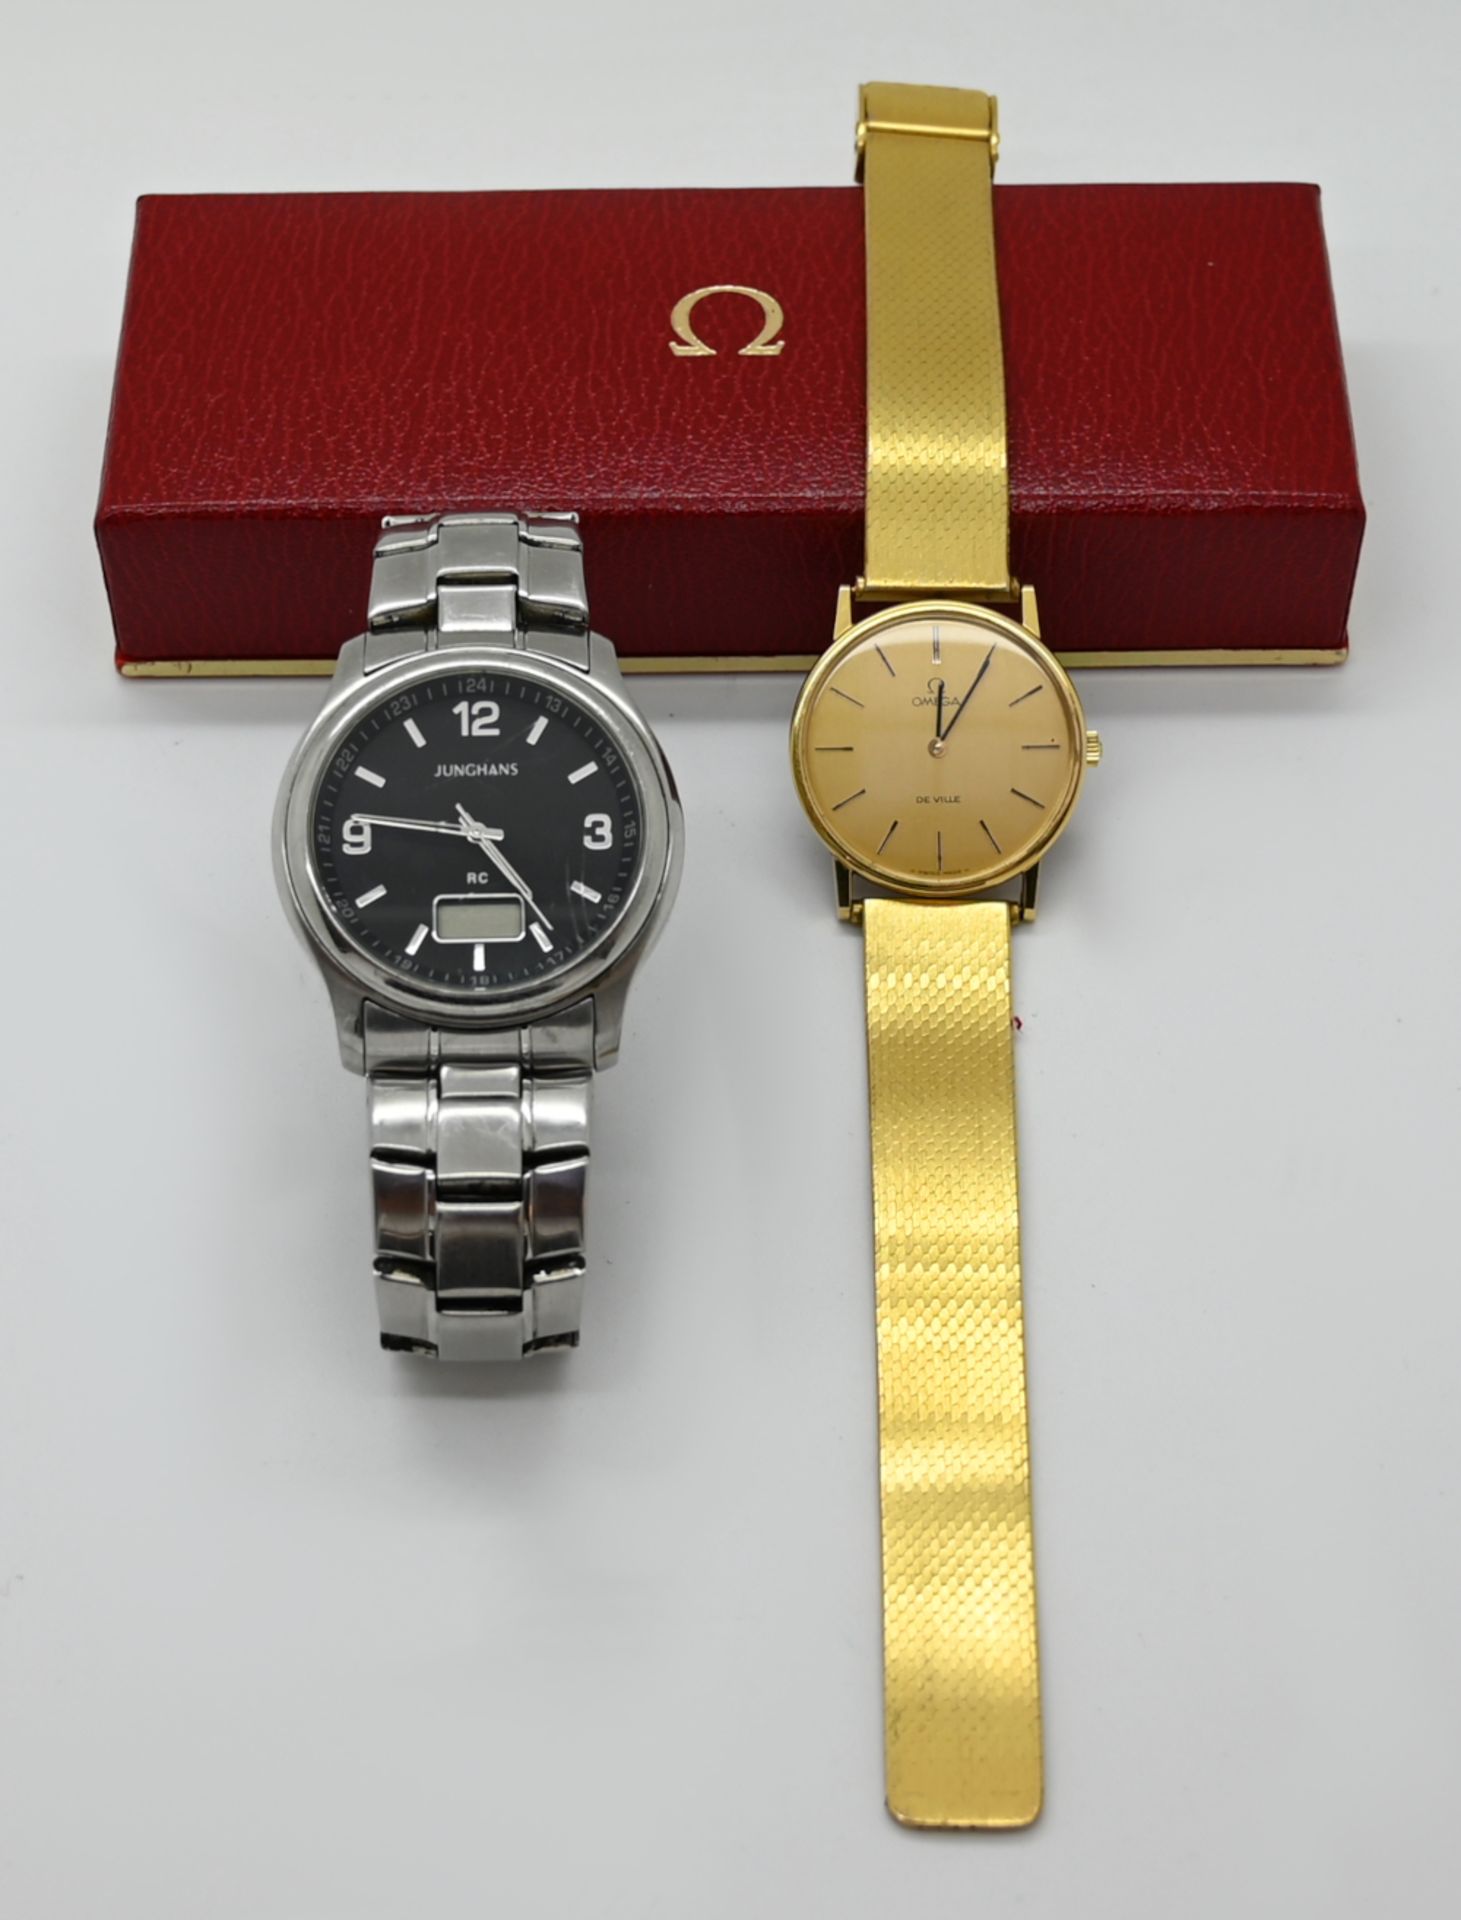 1 Armbanduhr OMEGA "De Ville", vergoldet, Handaufzug, Uhr läuft an sowie 1 Edelstahl-Herrenarmbanduh